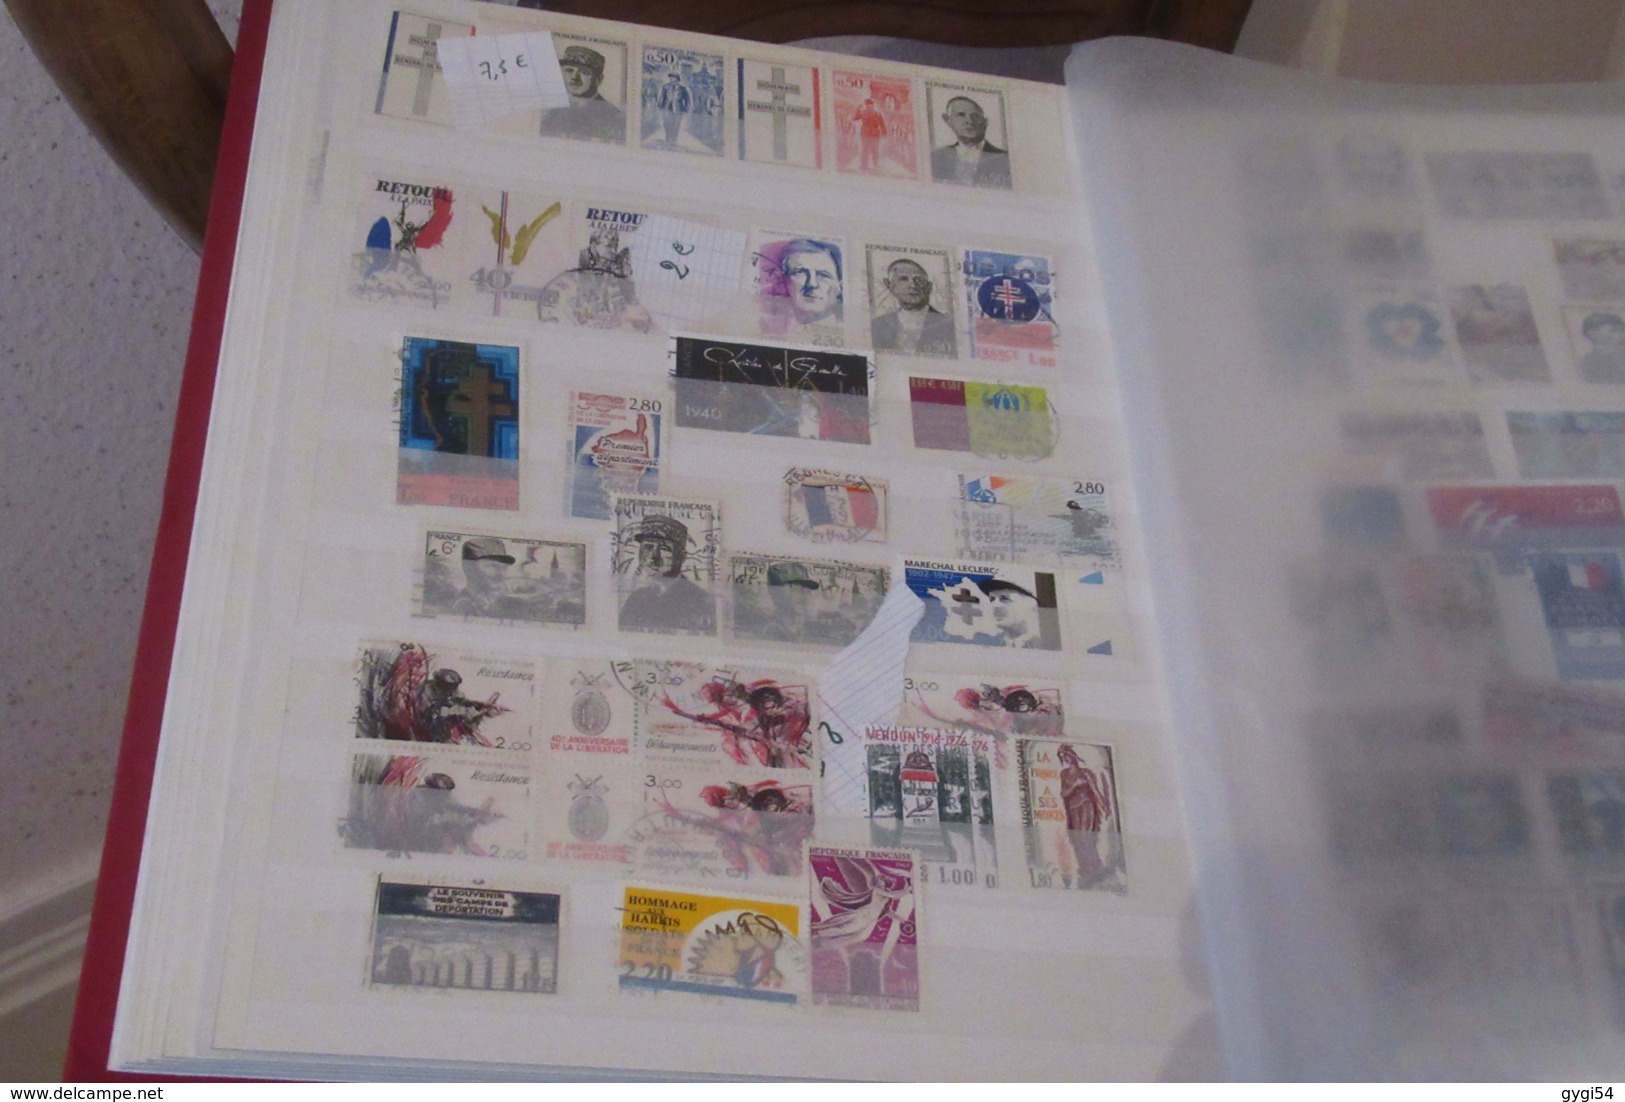 France Classeur 64 pages fond Blanc  1945 - 1998  timbres oblitérés   40 scans